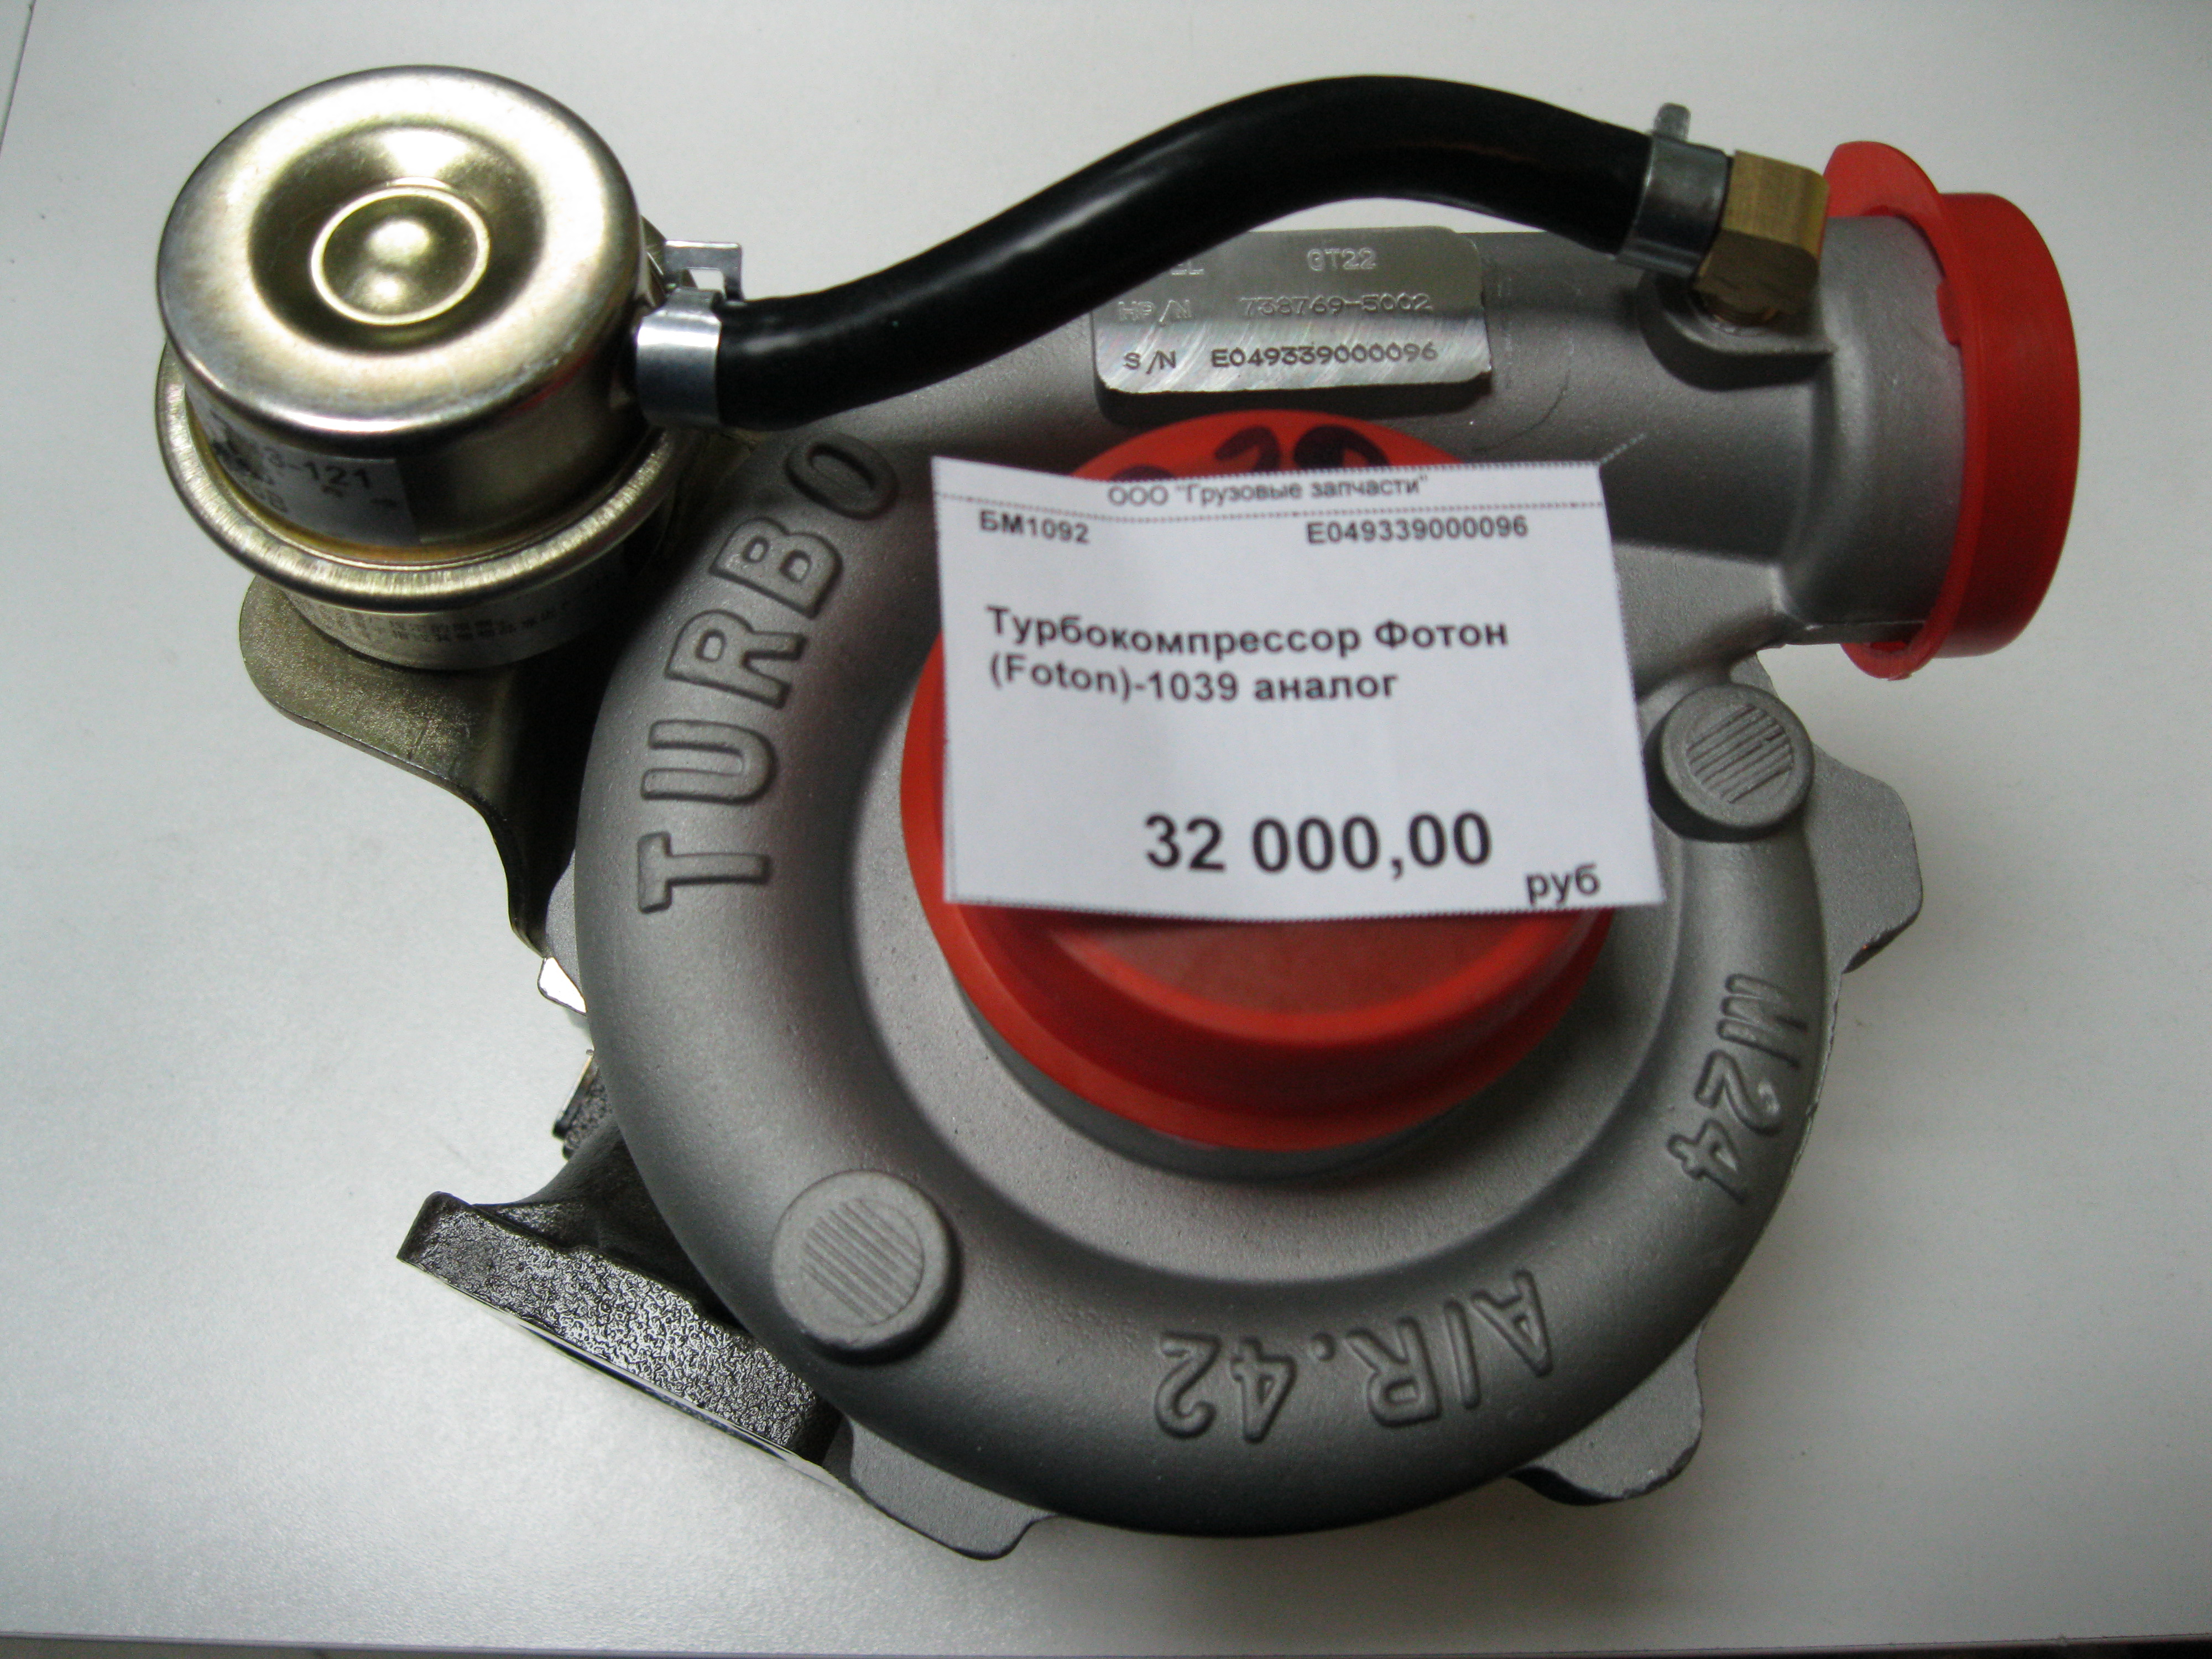 Турбокомпрессор фотон (foton)-1039 turbosh (с водяным охлаждением) E049339000096